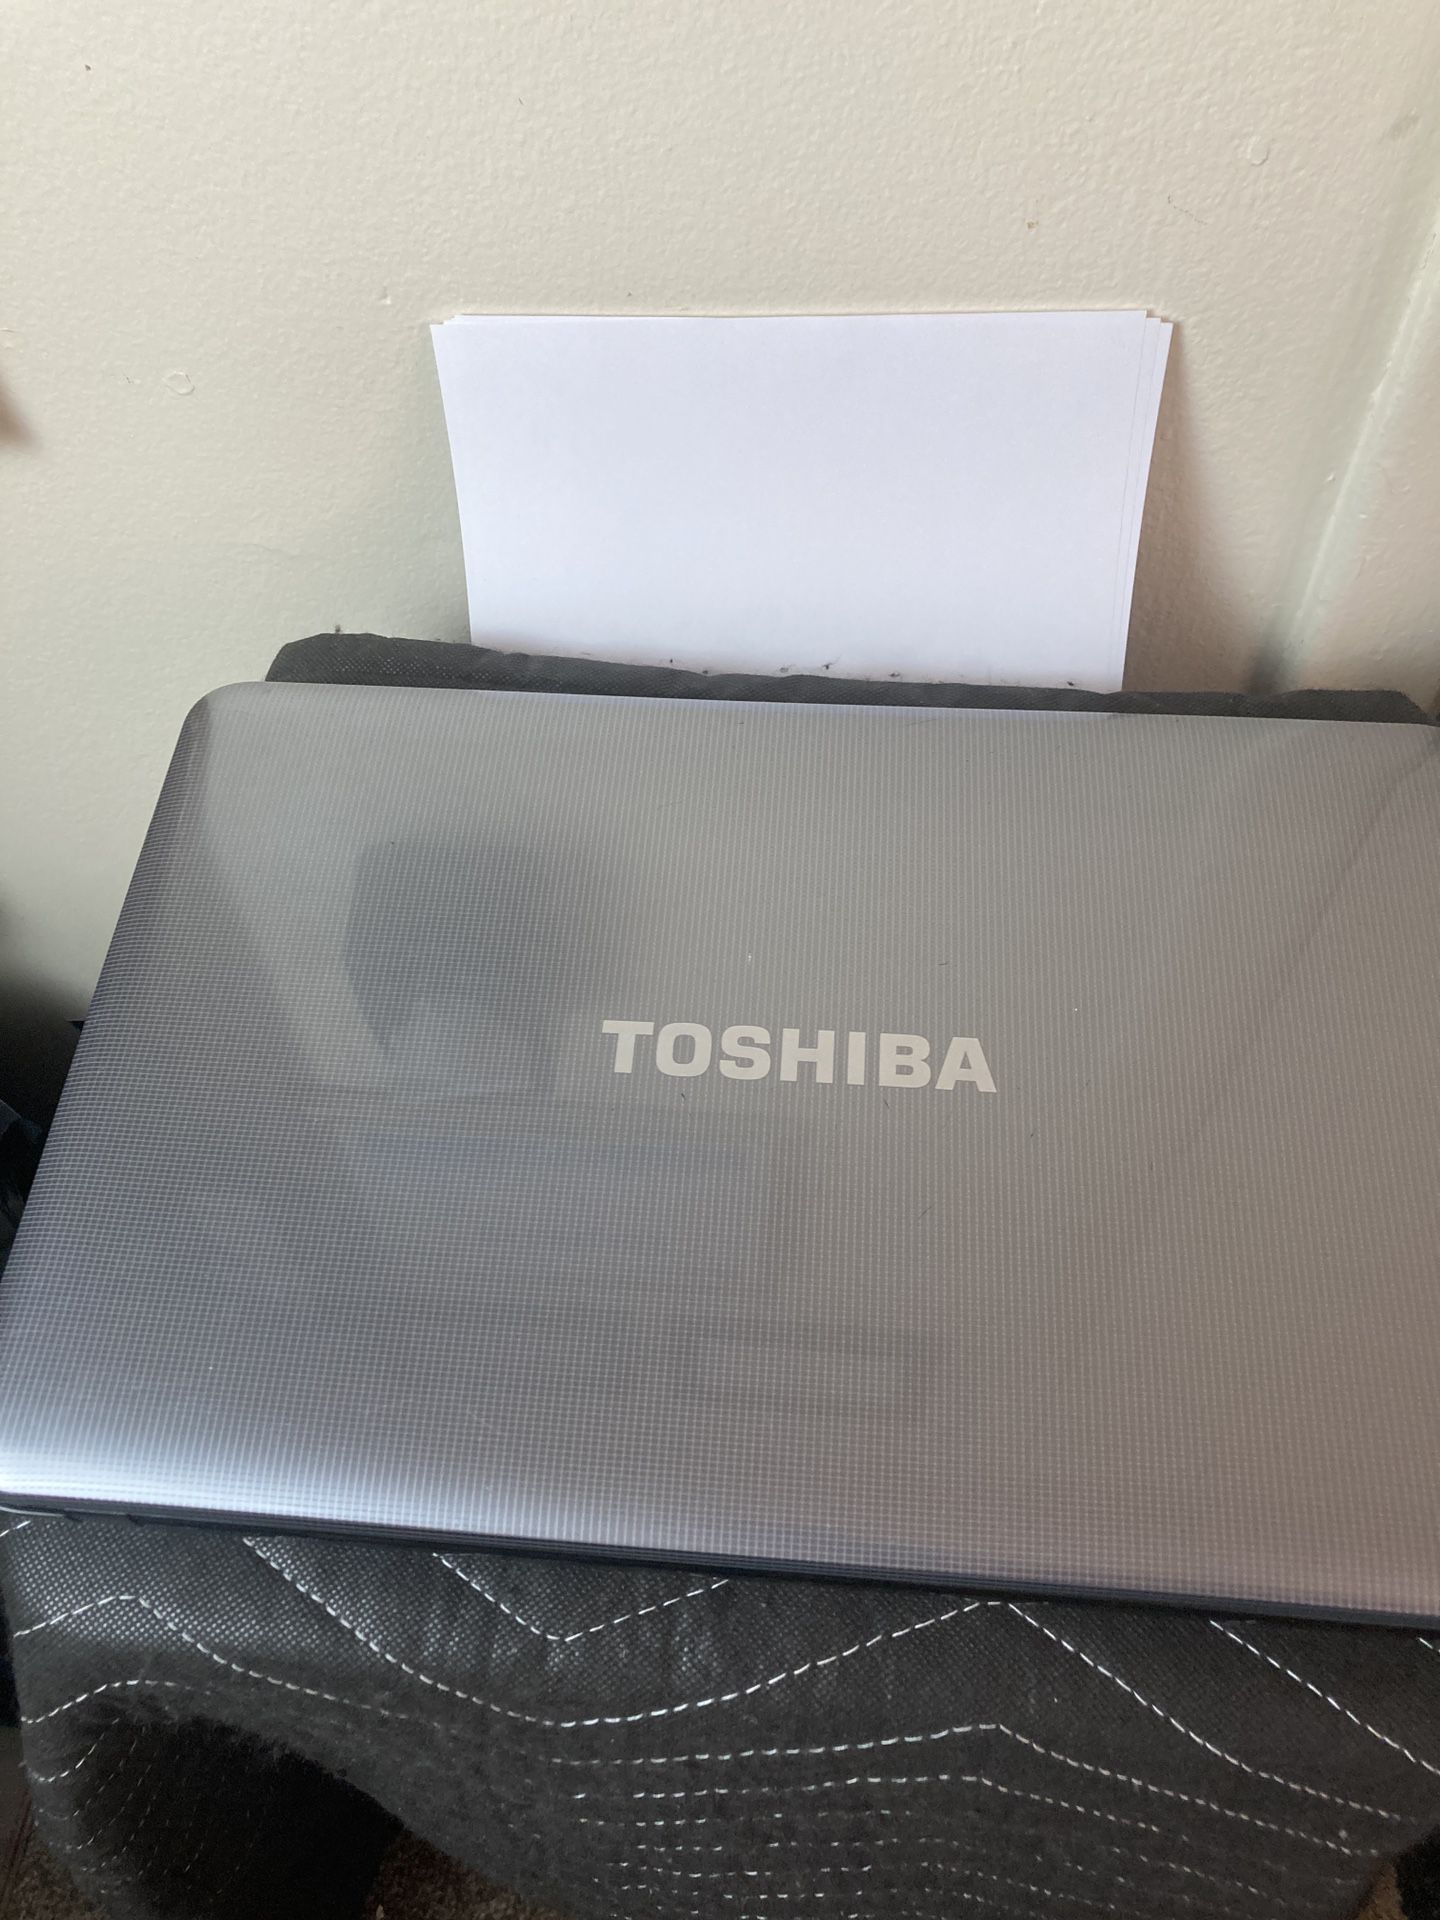 Toshiba Satellite Laptop 